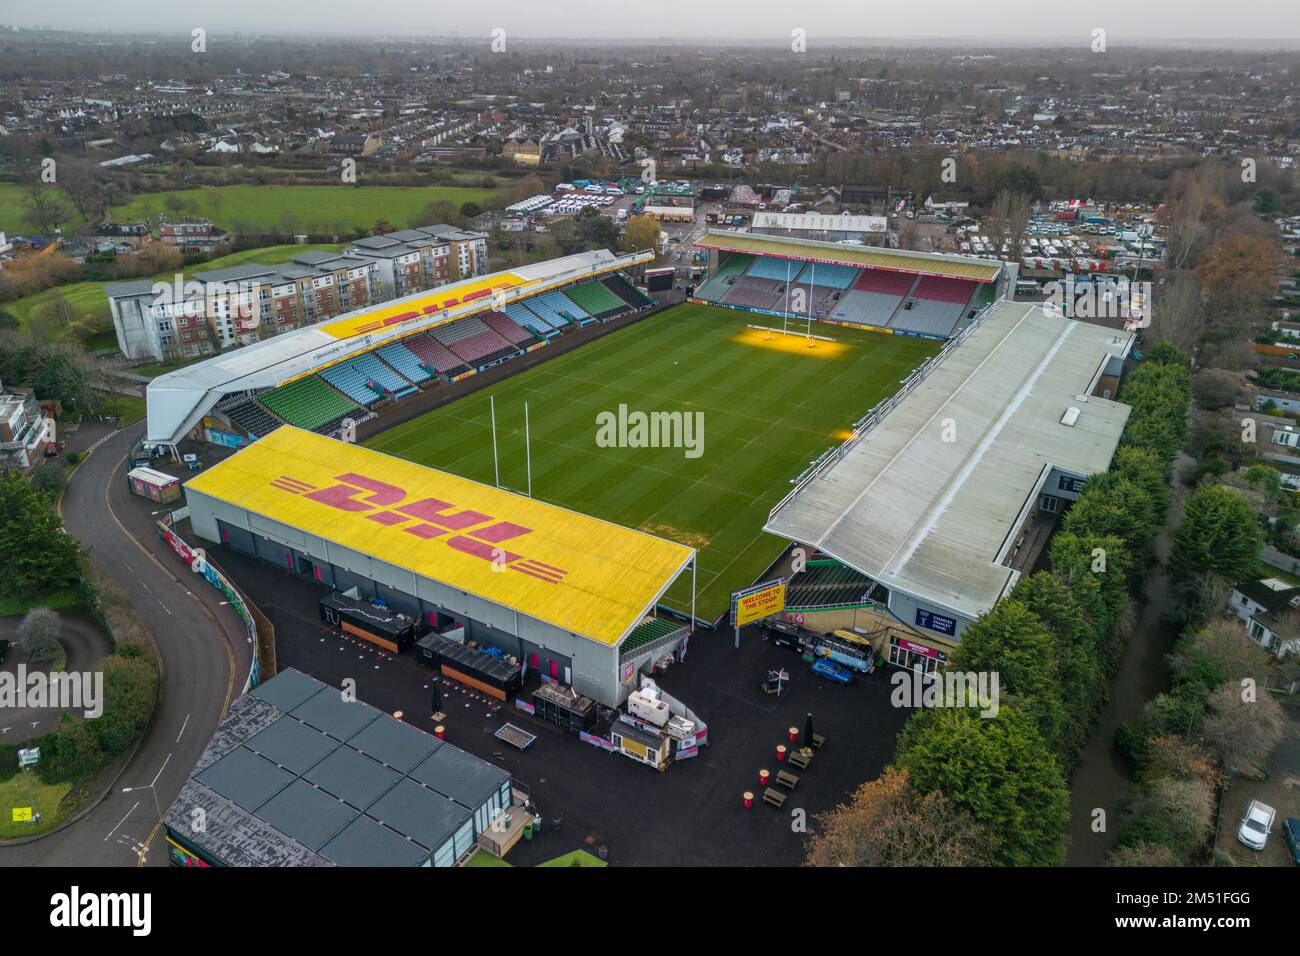 Veduta aerea di Twickenham Stoop, sede della squadra di rugby Harlequins, Londra, Regno Unito. Foto Stock